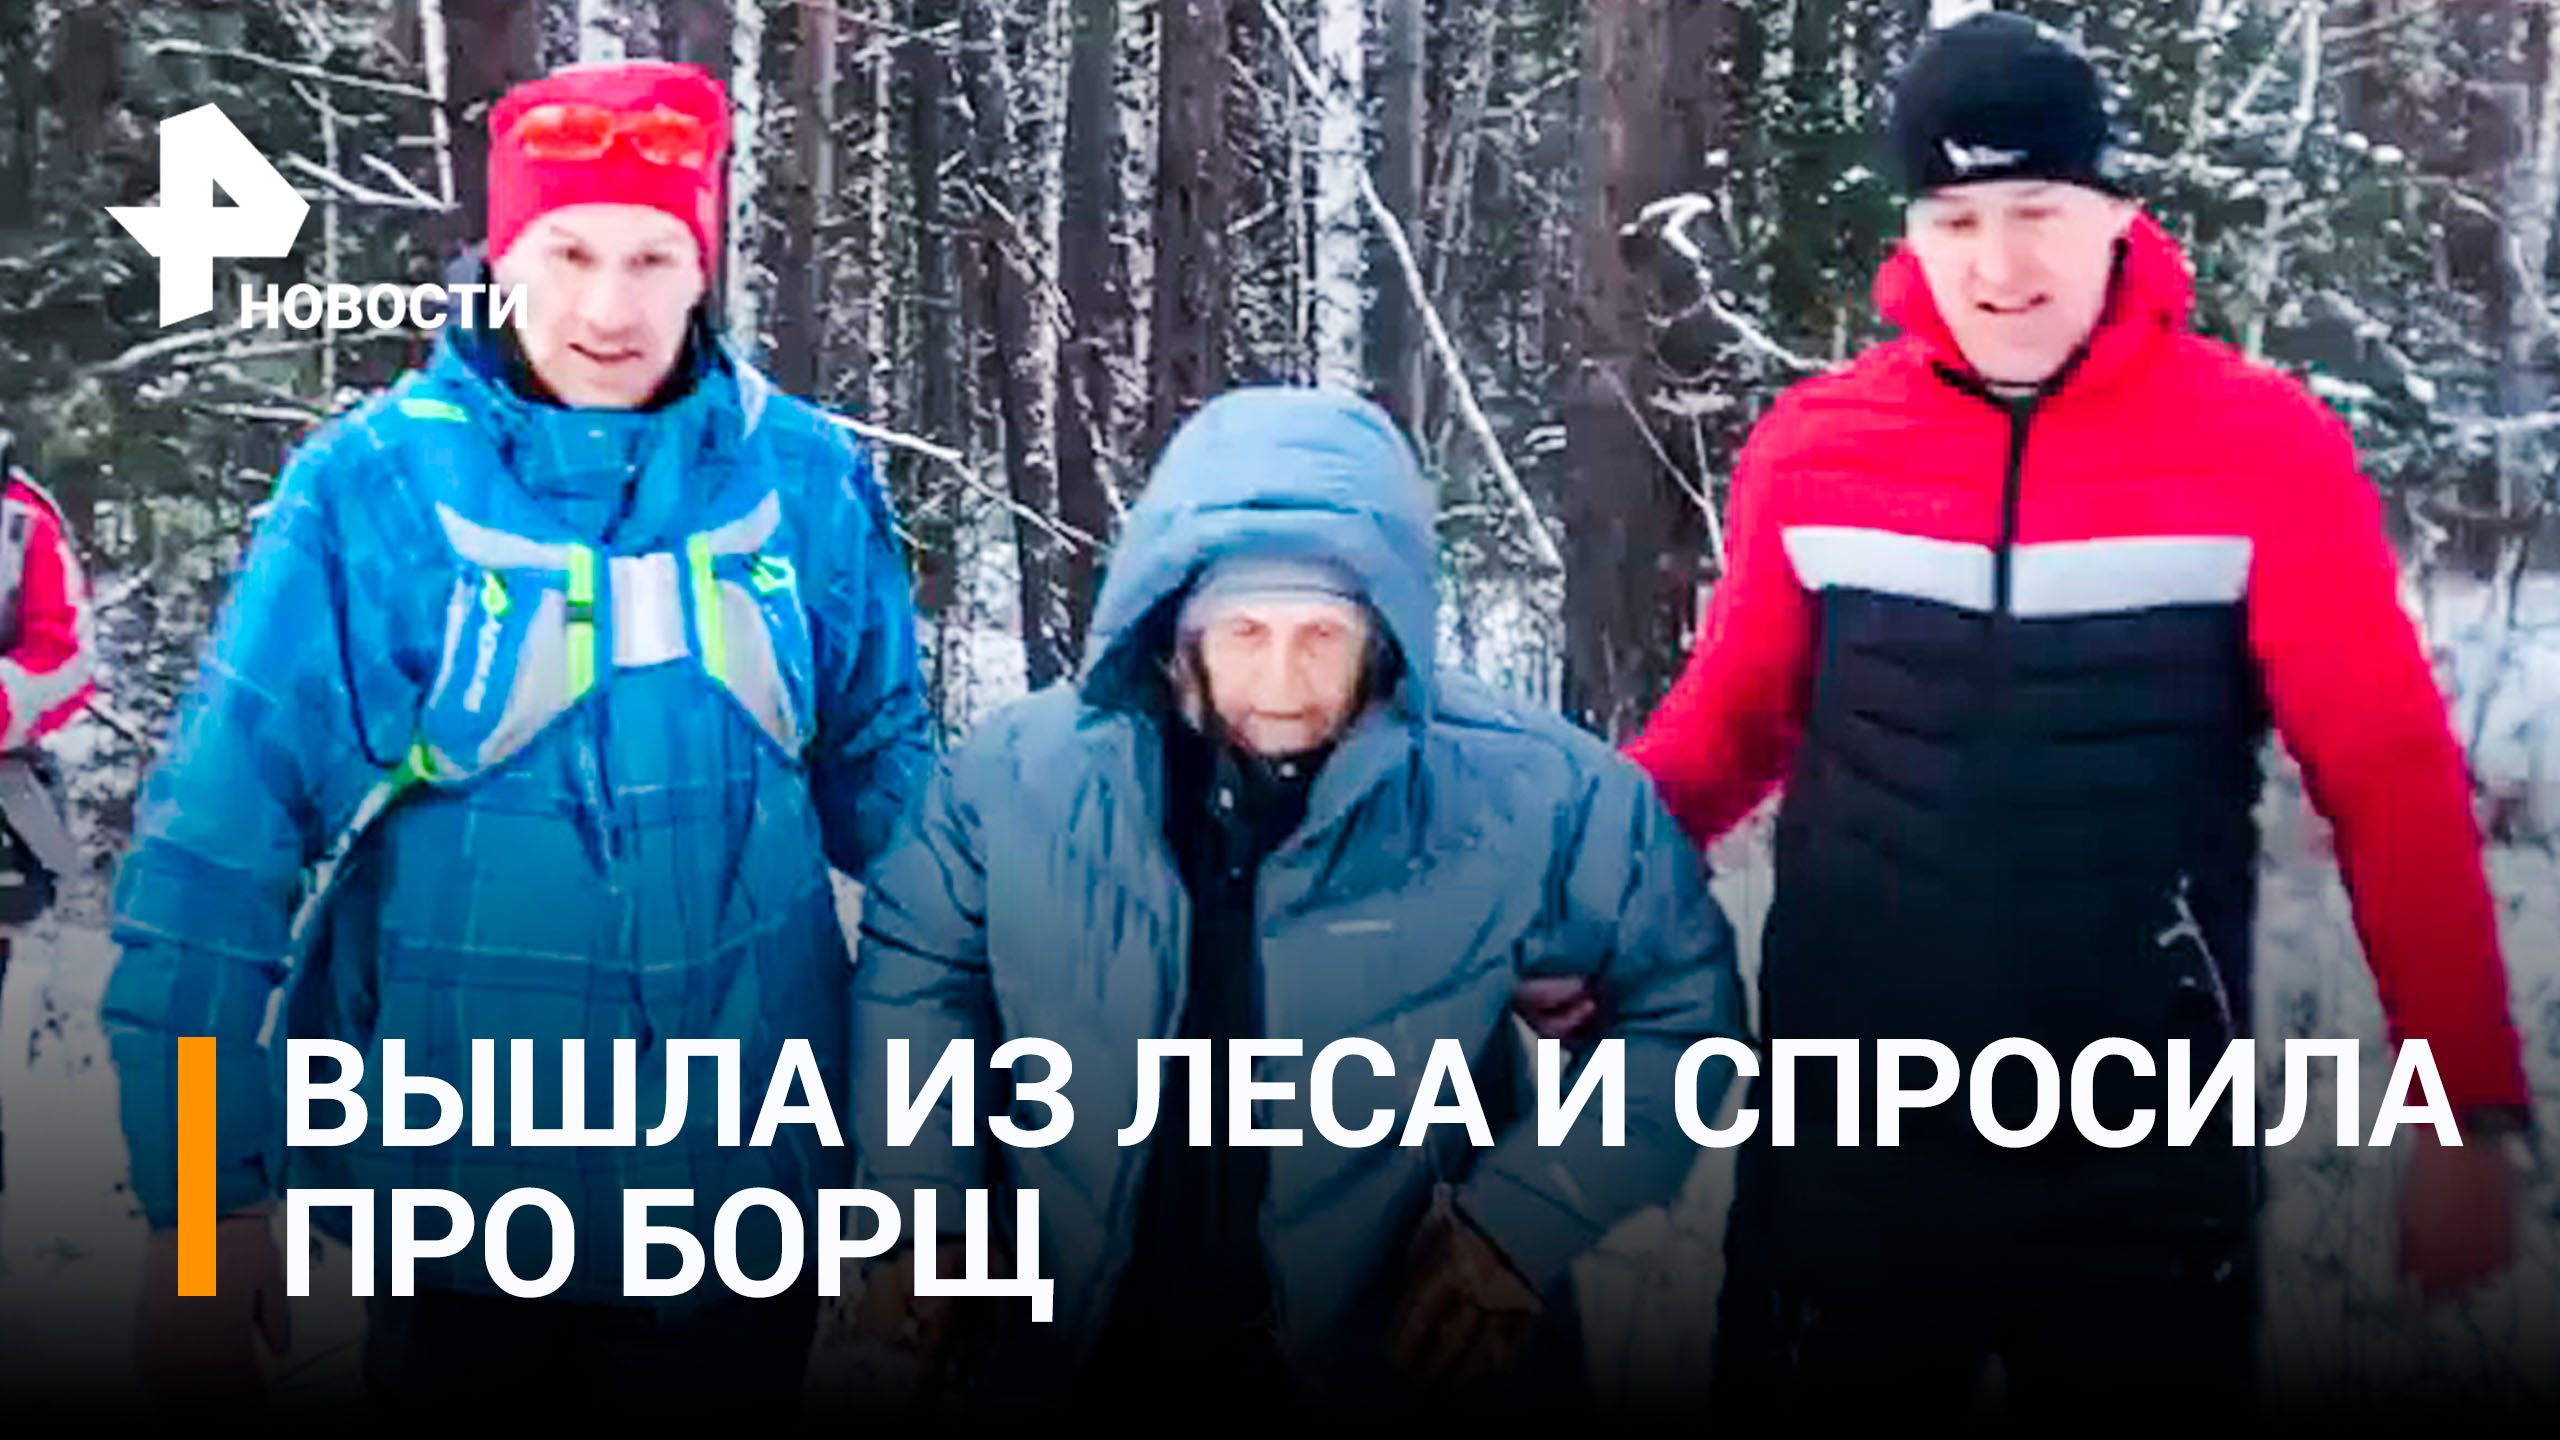 "Я там борща наварила. Хоть поели-то?!": бабушка из Красноярска провела 25 часов на морозе в лесу